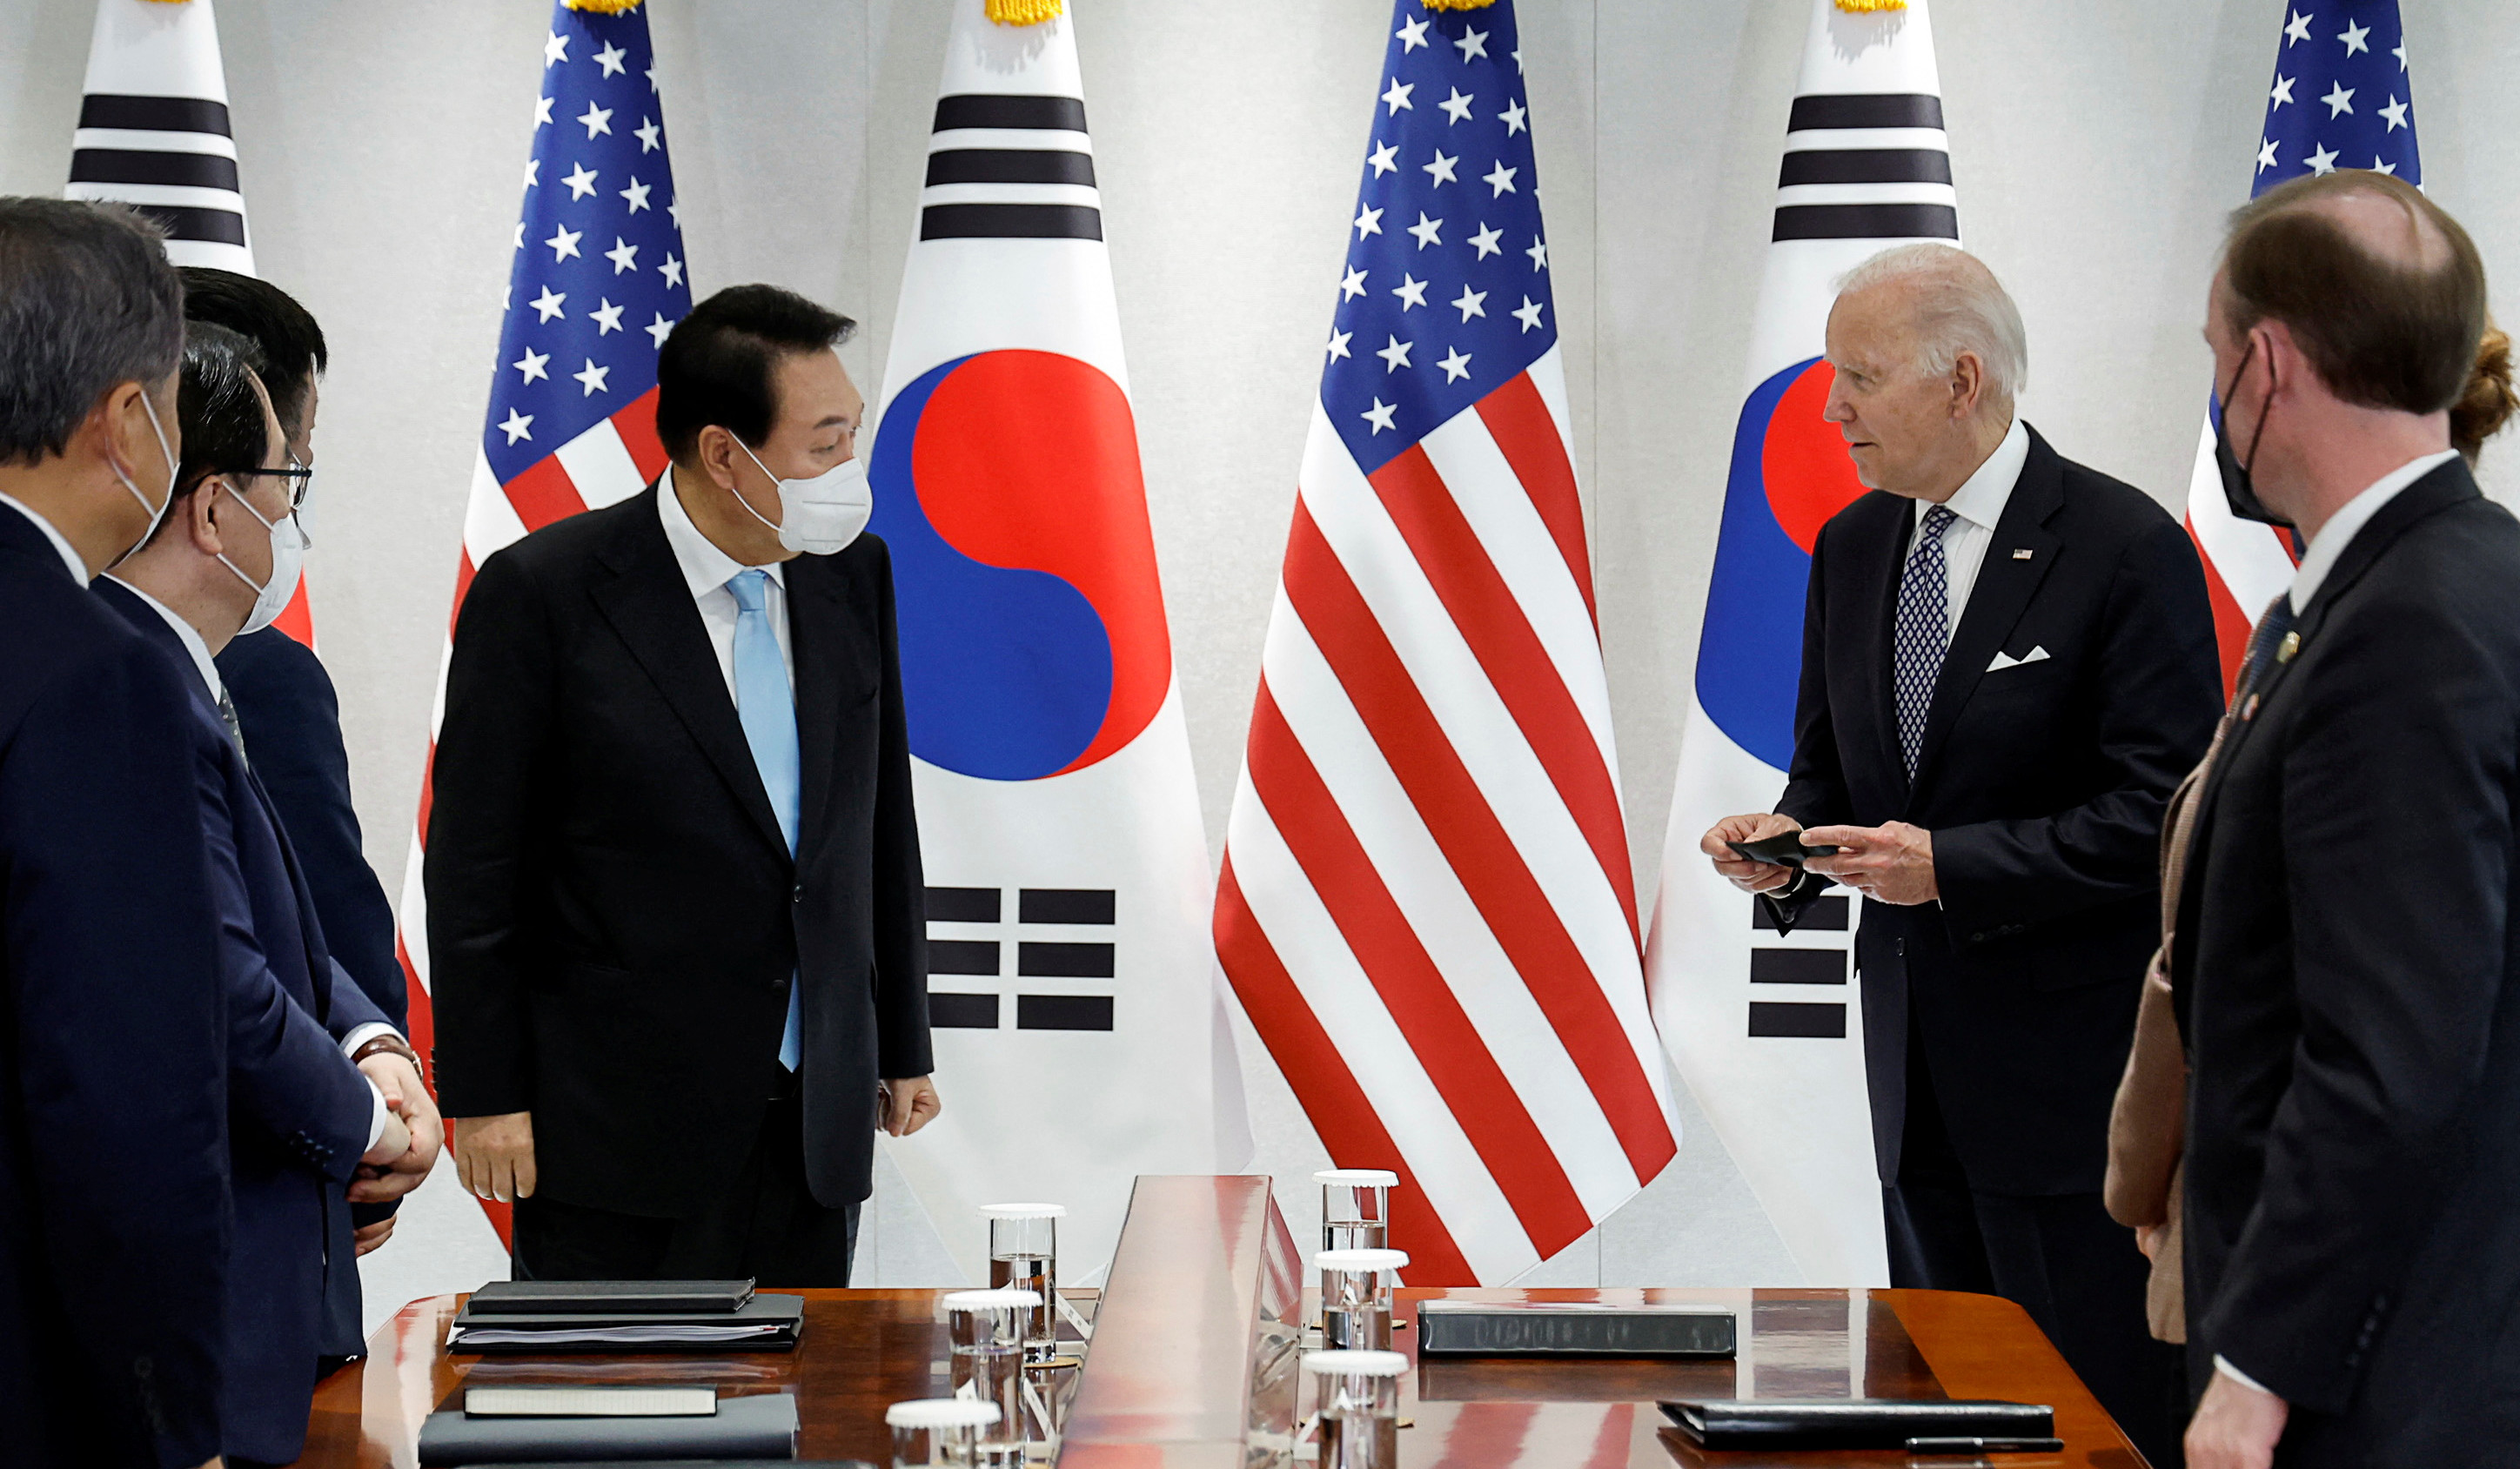 ԱՄՆ-ի և Հարավային Կորեայի նախագահները դատապարտել են ԿԺԴՀ-ի հրթիռային փորձարկումները